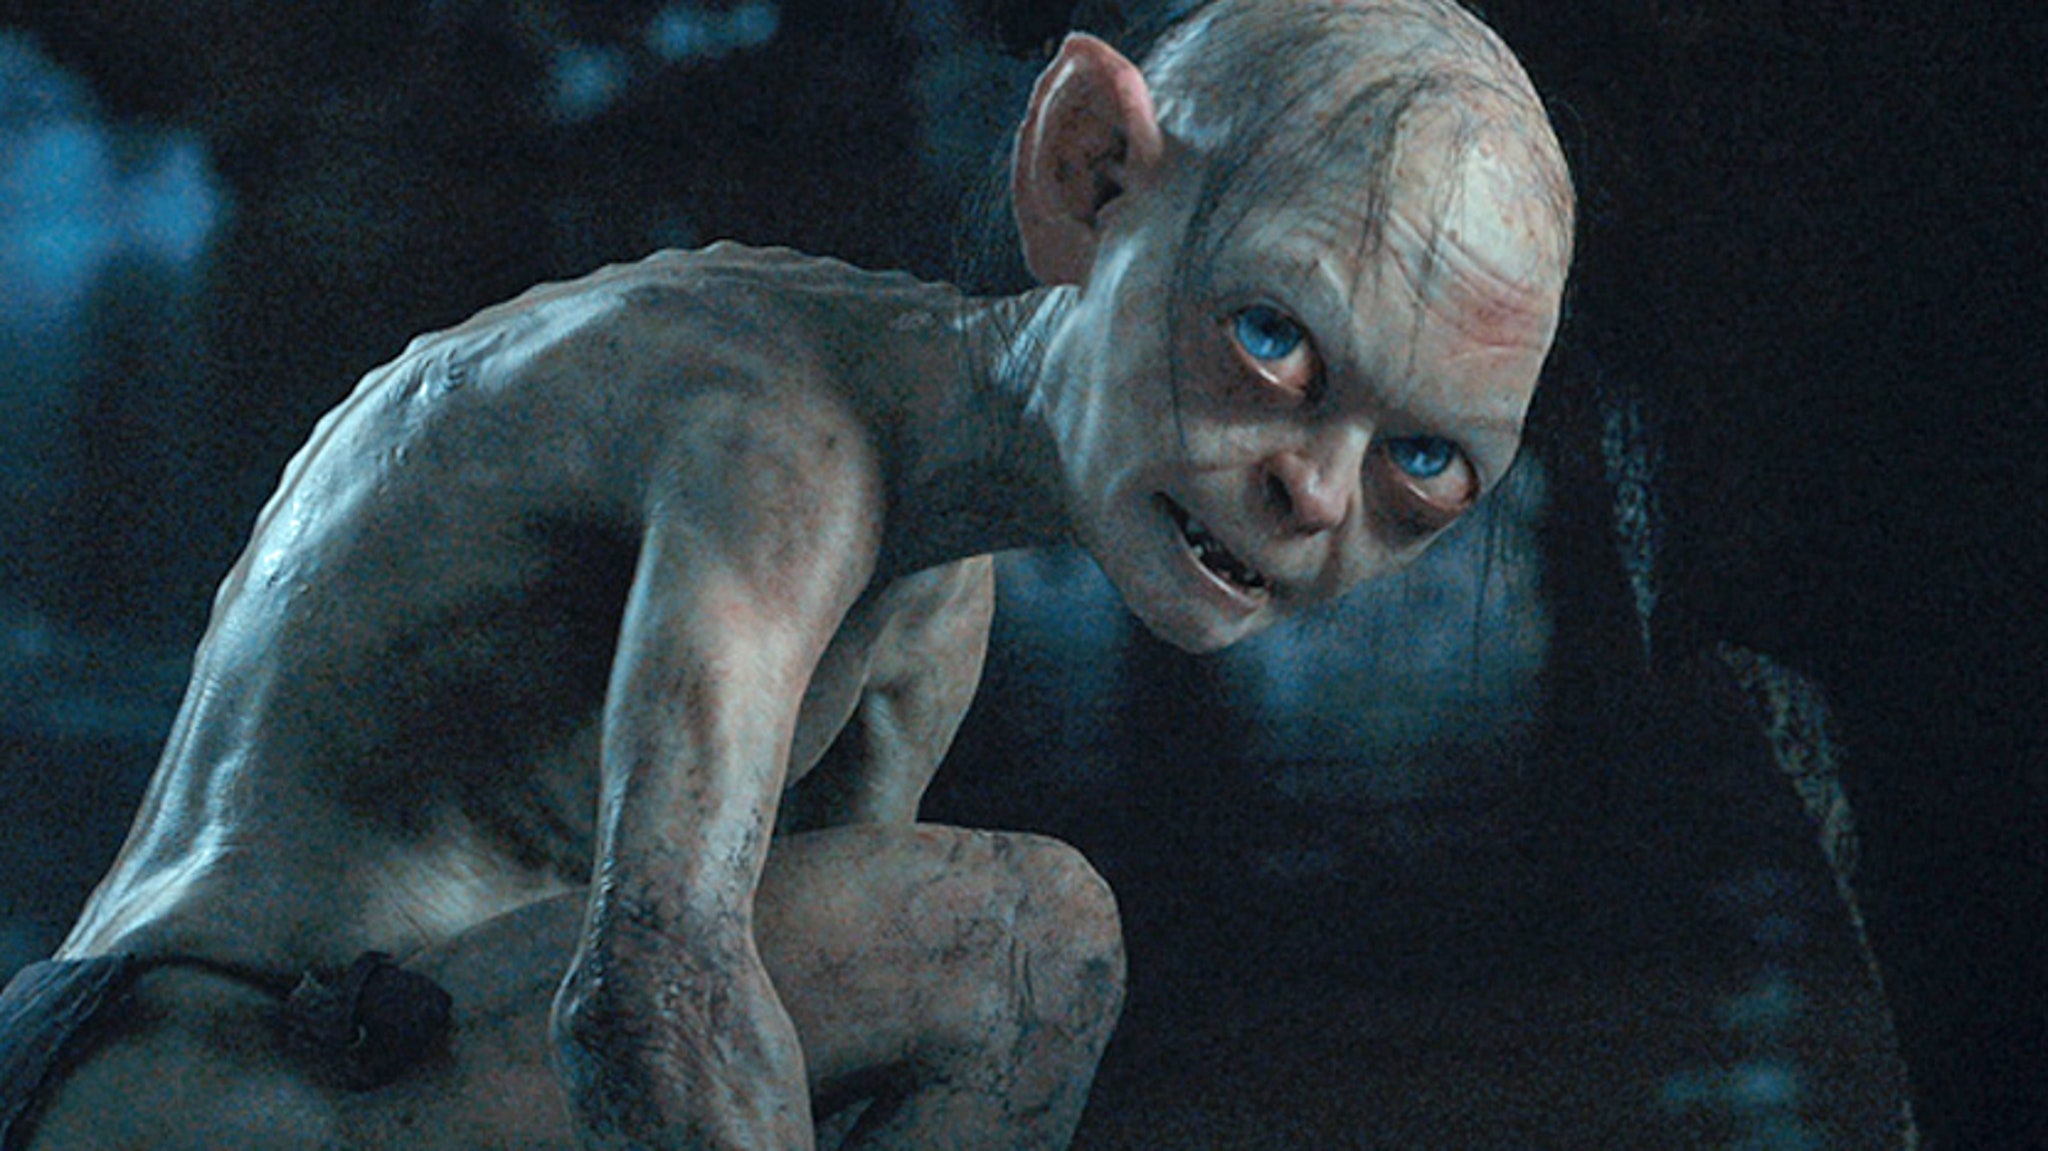 Gollum Returns & Crazy Goblin Action In New "Hobbit" Clips